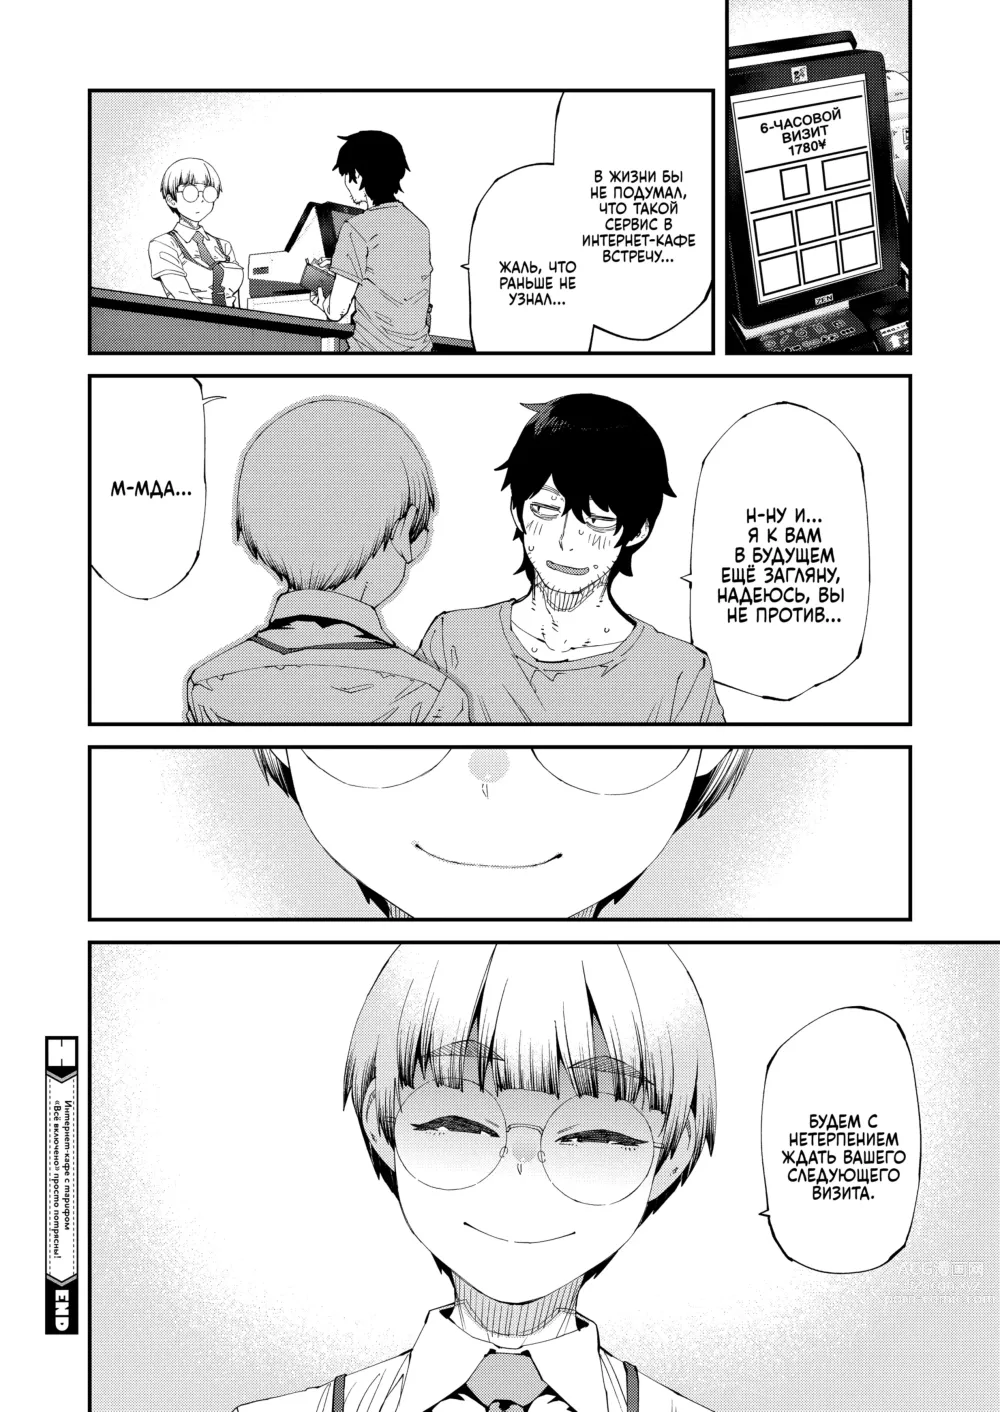 Page 22 of manga Интернет-кафе с тарифом 